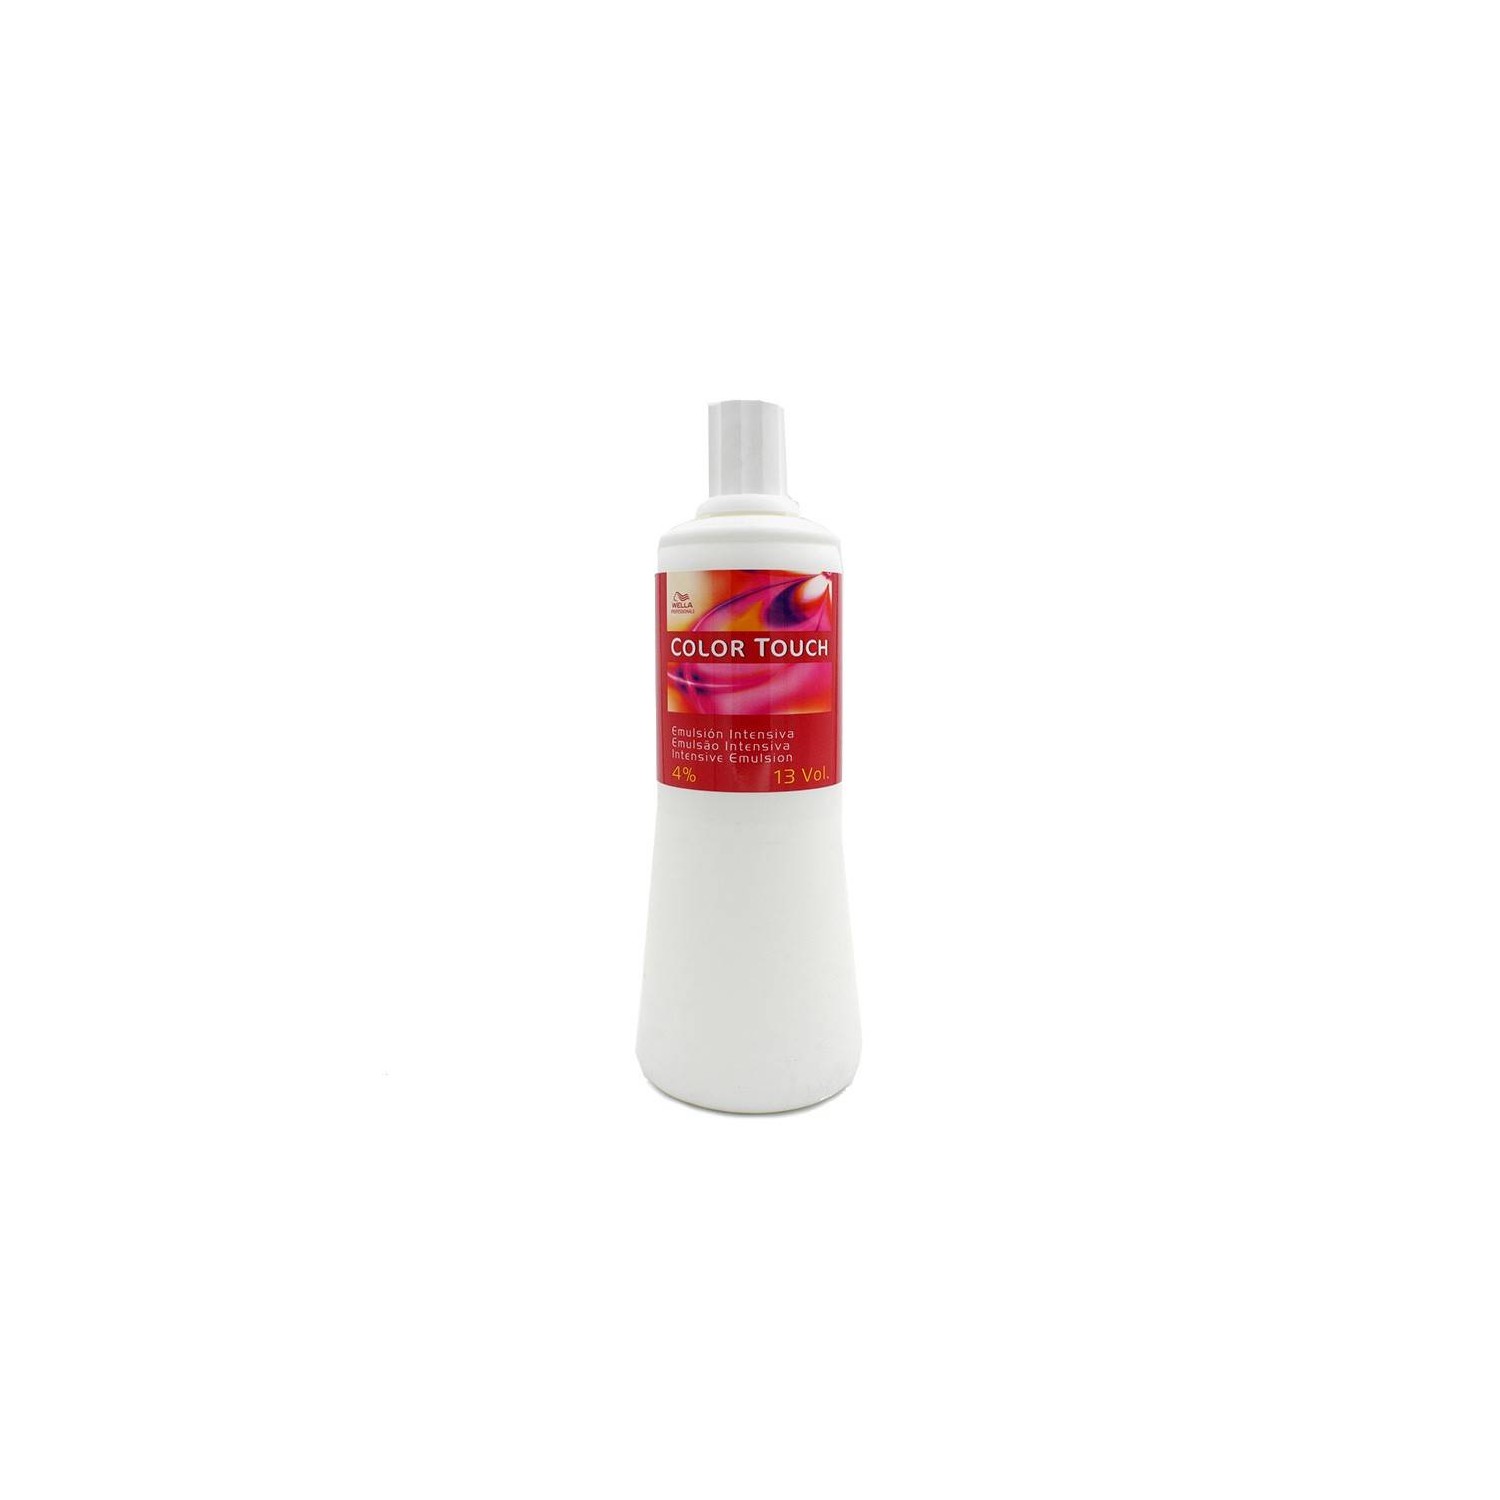 Wella Colore Touch Emulsione 13vol (4%) 1000 ml